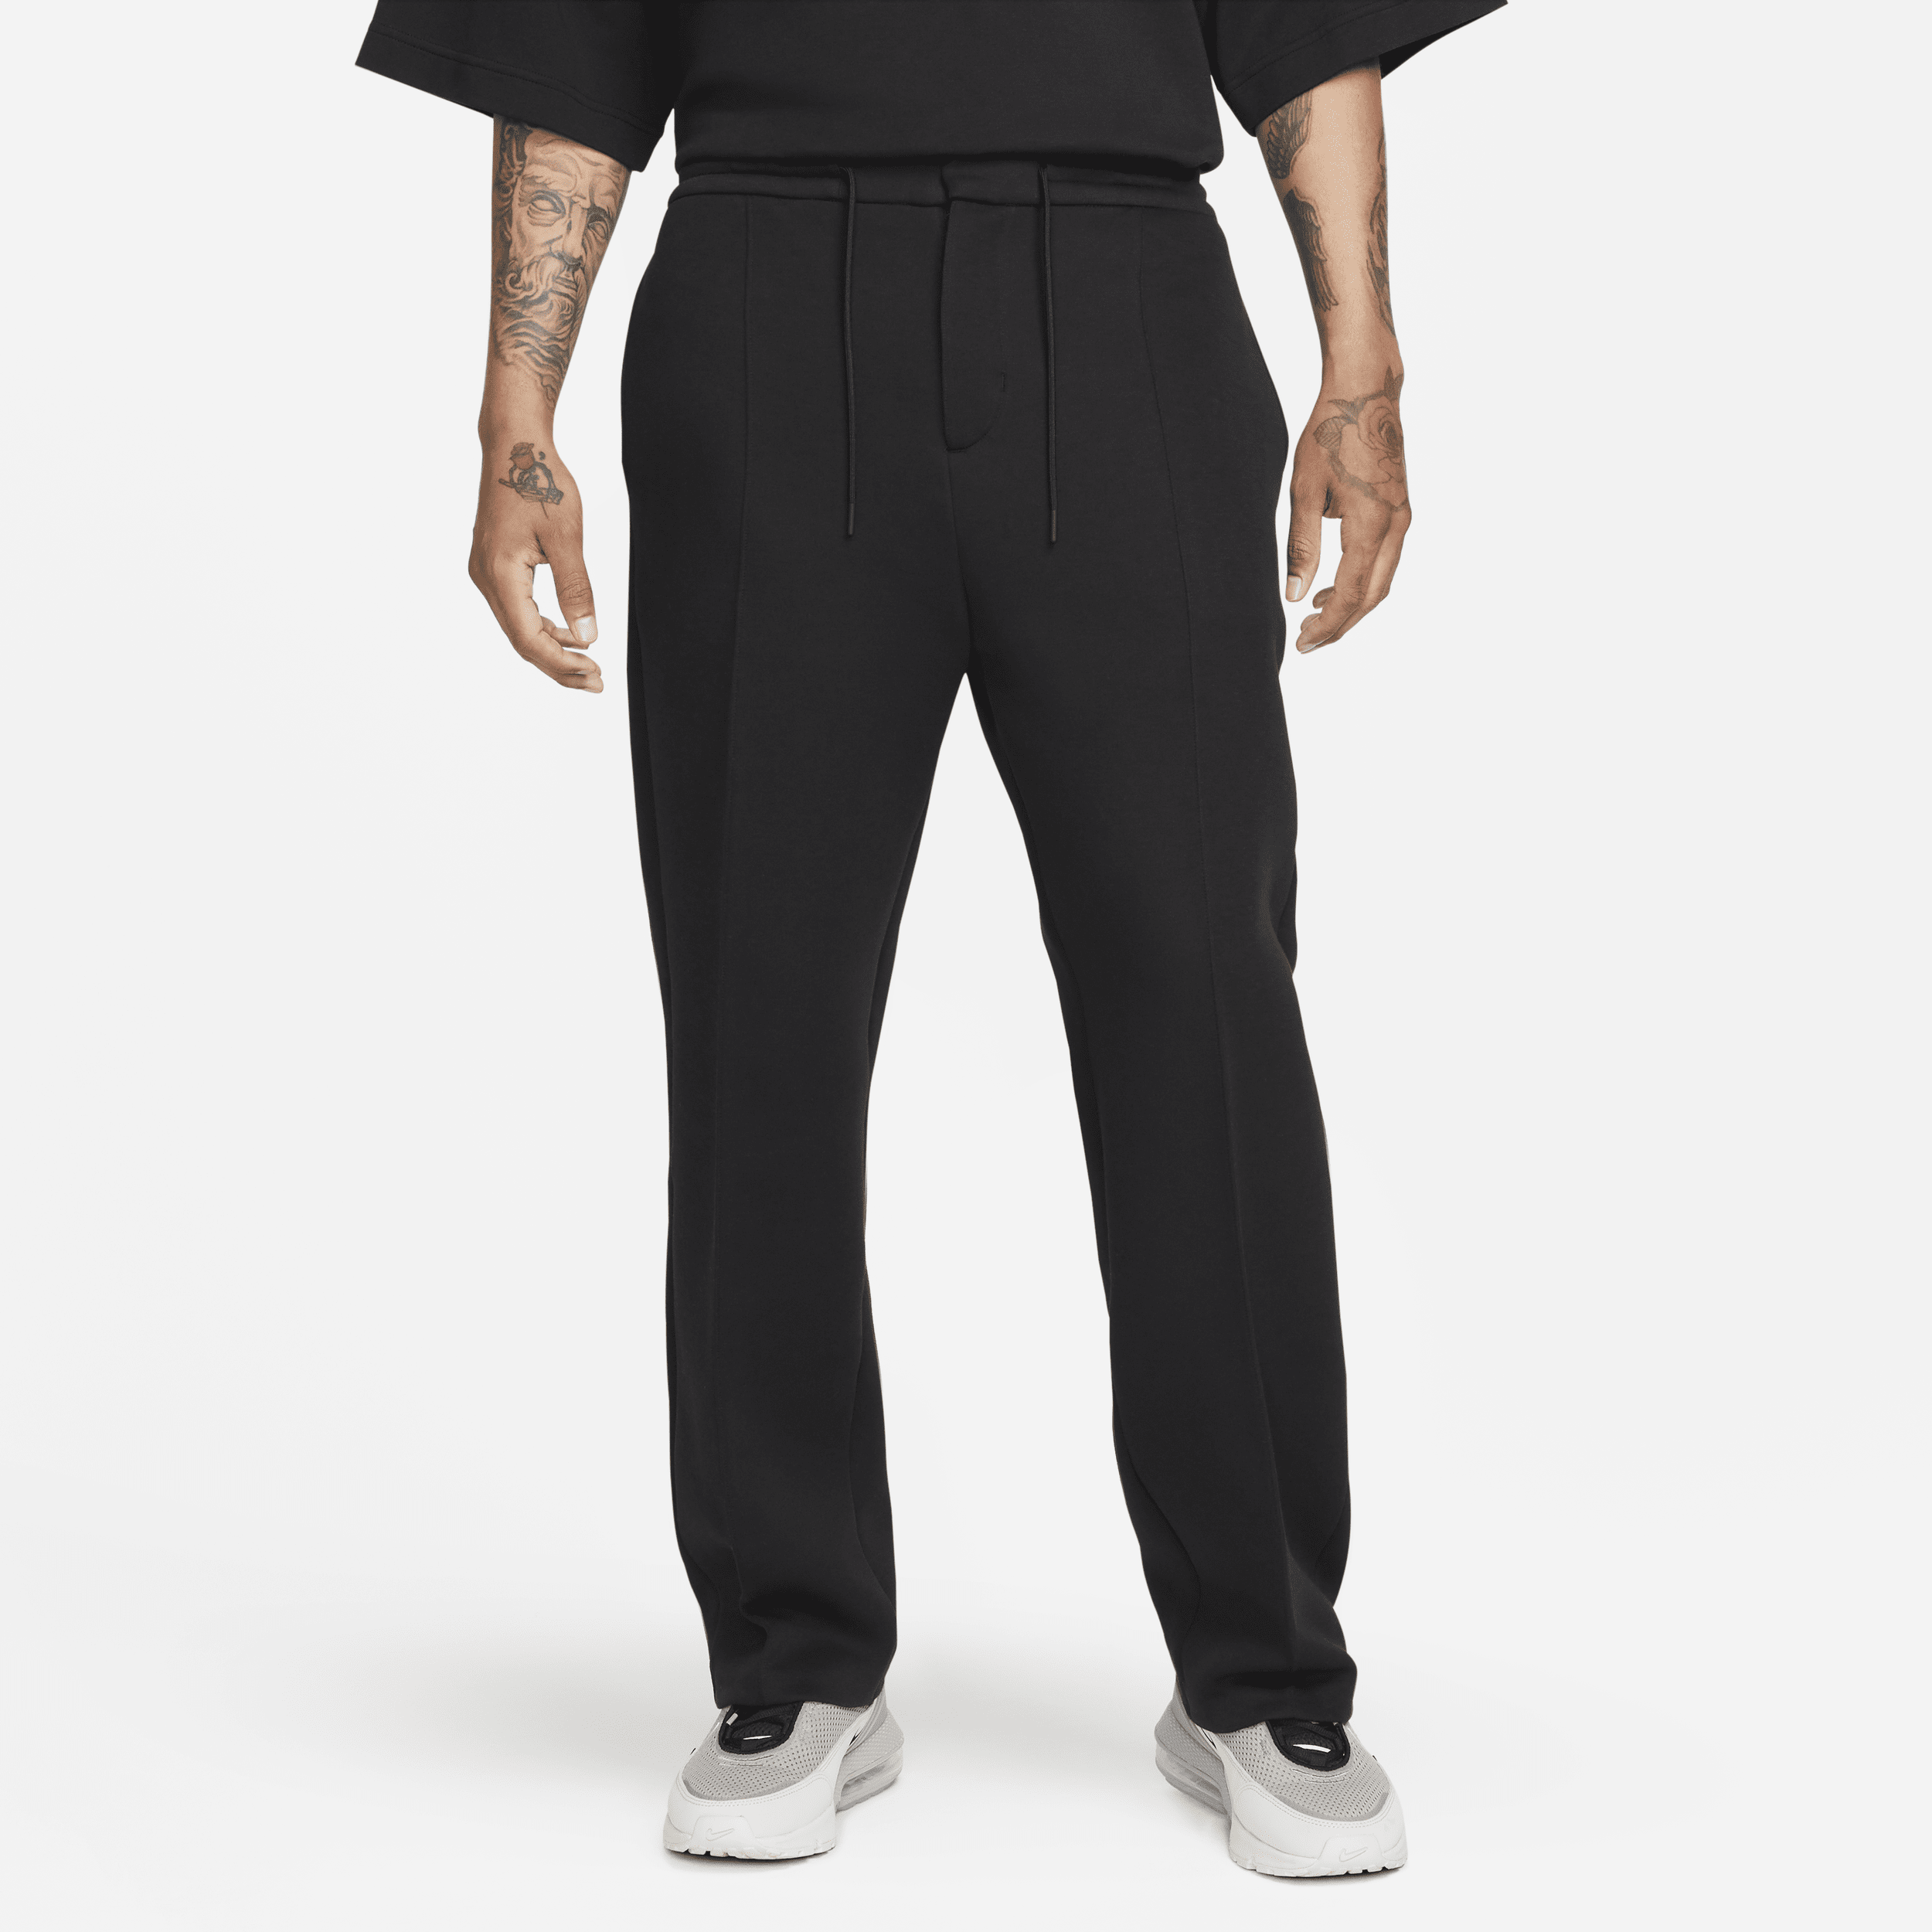 Nike Sportswear Tech Fleece Reimagined Jogger con dobladillo abierto y ajuste holgado - Hombre - Negro